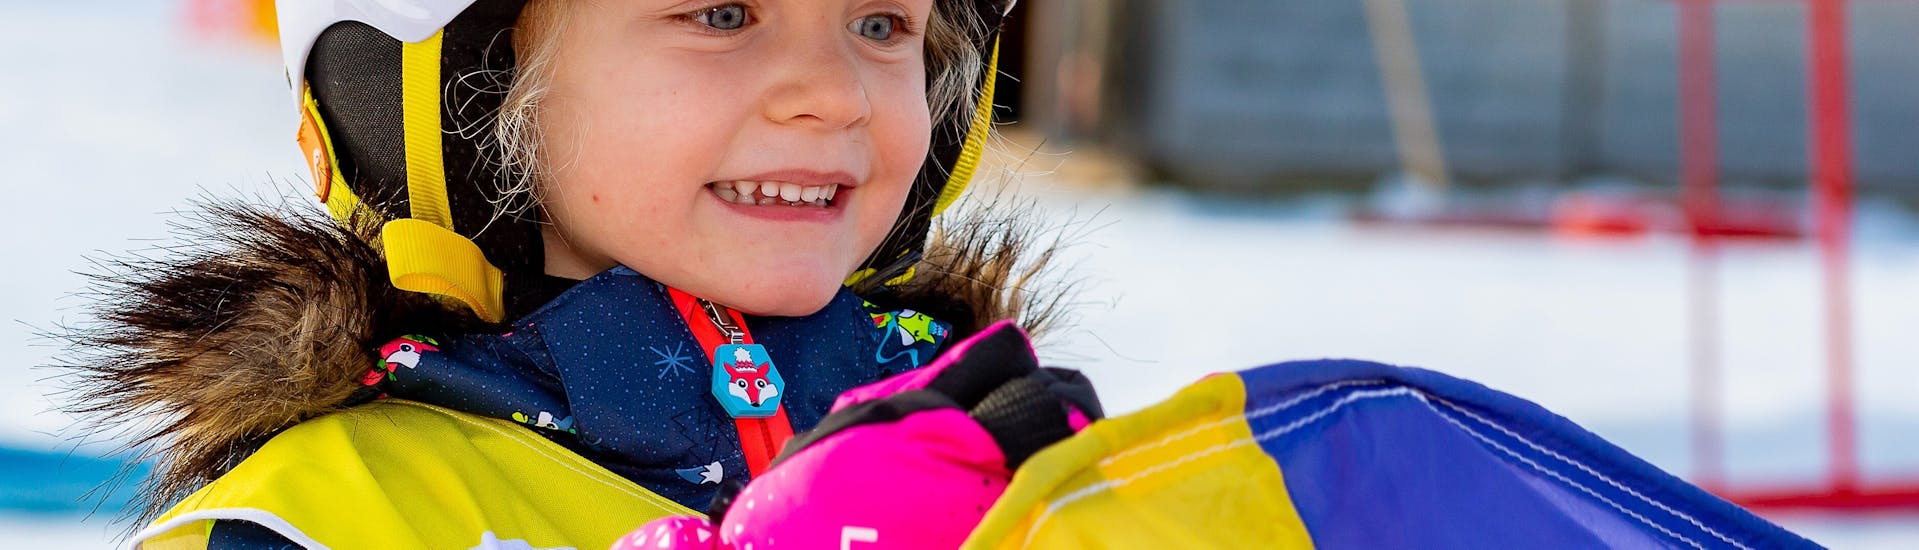 Un enfant s'amusant lors des Cours de ski Enfants "Bambini MAX 4" (2-3 ans) pour Débutants avec l'école de ski Snow Sports School Eichenhof St. Johann.